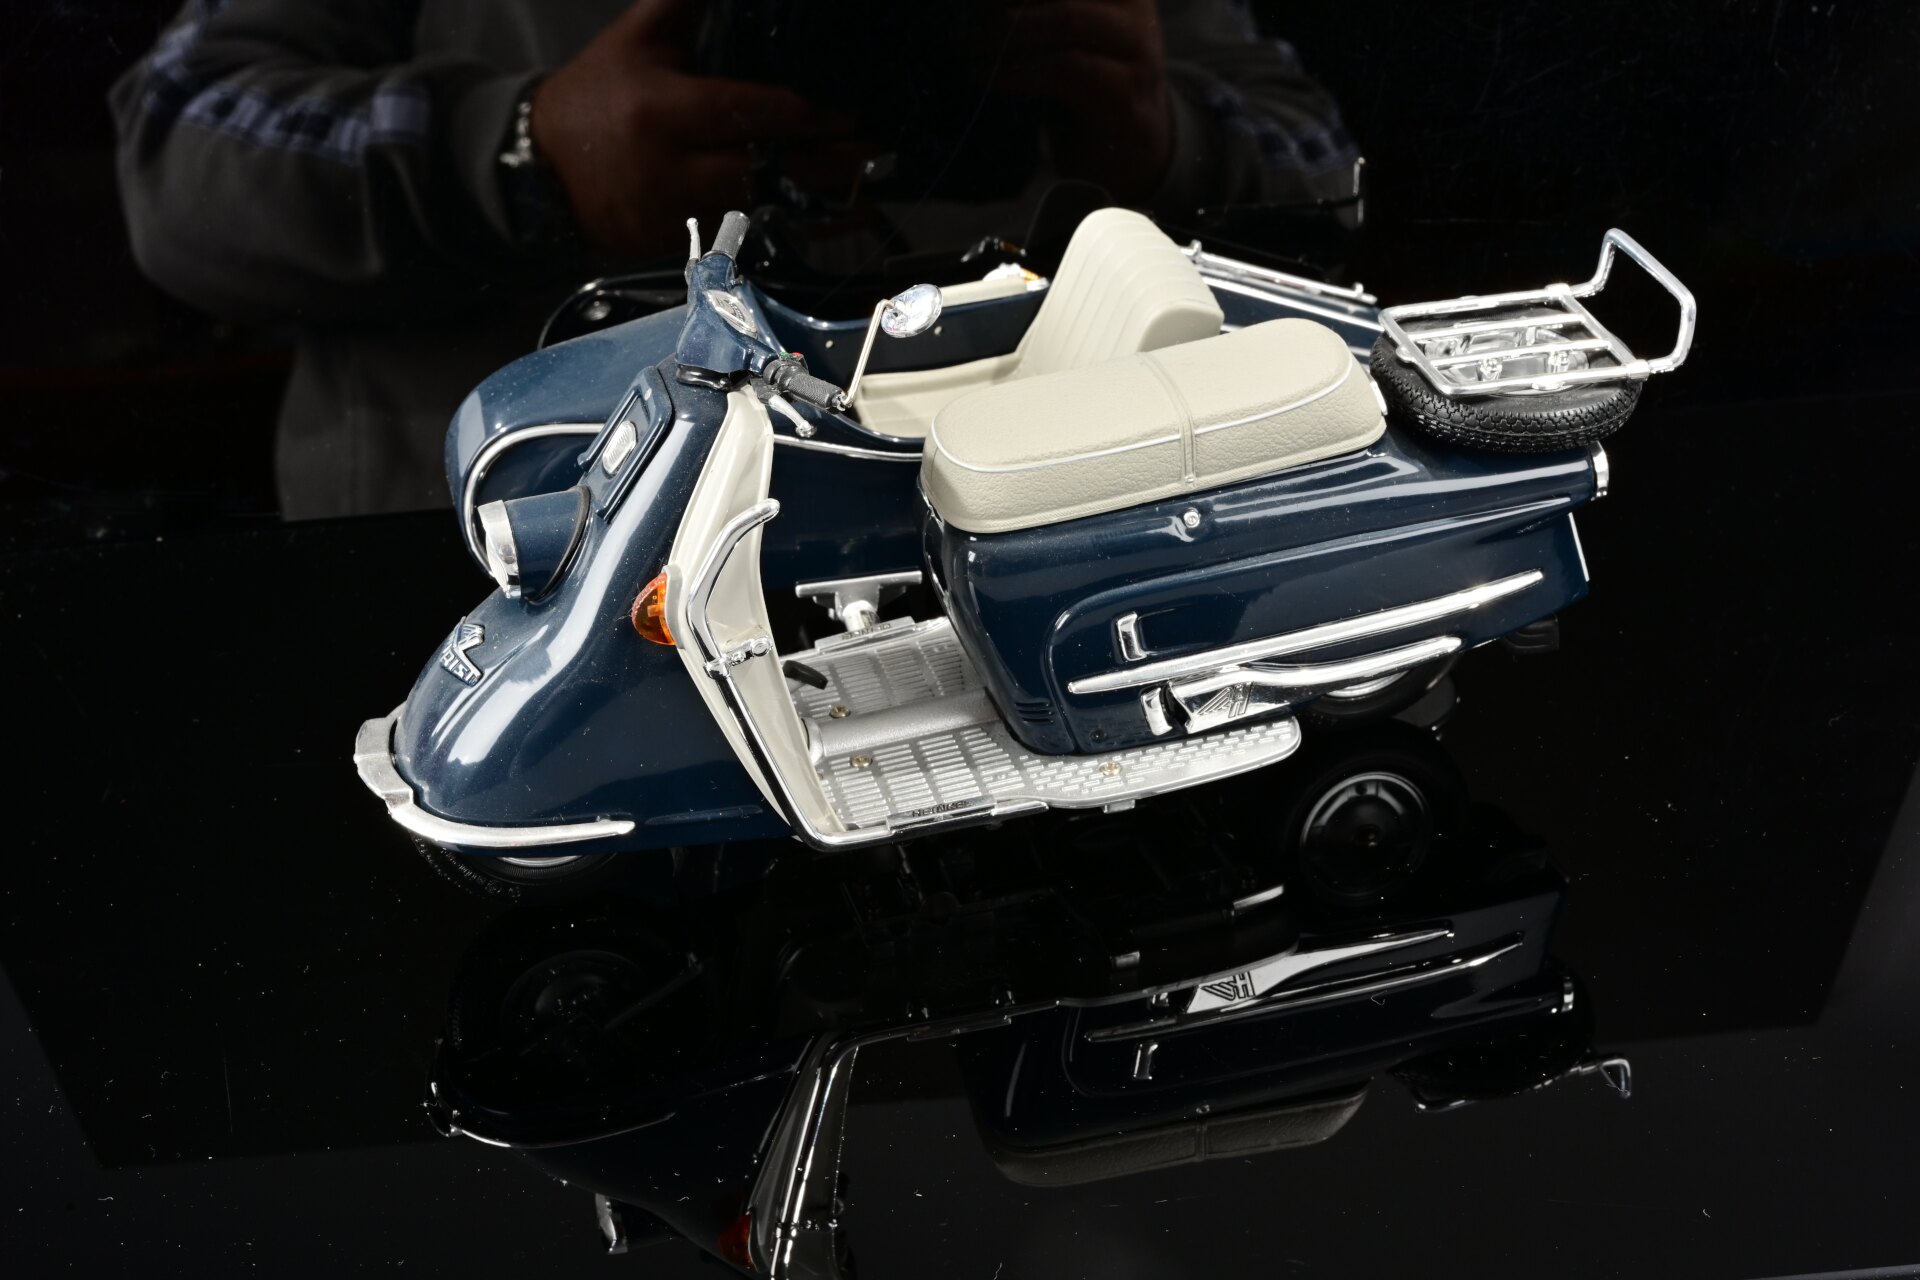 4 x Motorrad mit Beiwagen, Maßstab 1:10, verschiedene Farben und Modelle, 20. / 21. Jahrhundert, sc - Image 14 of 17